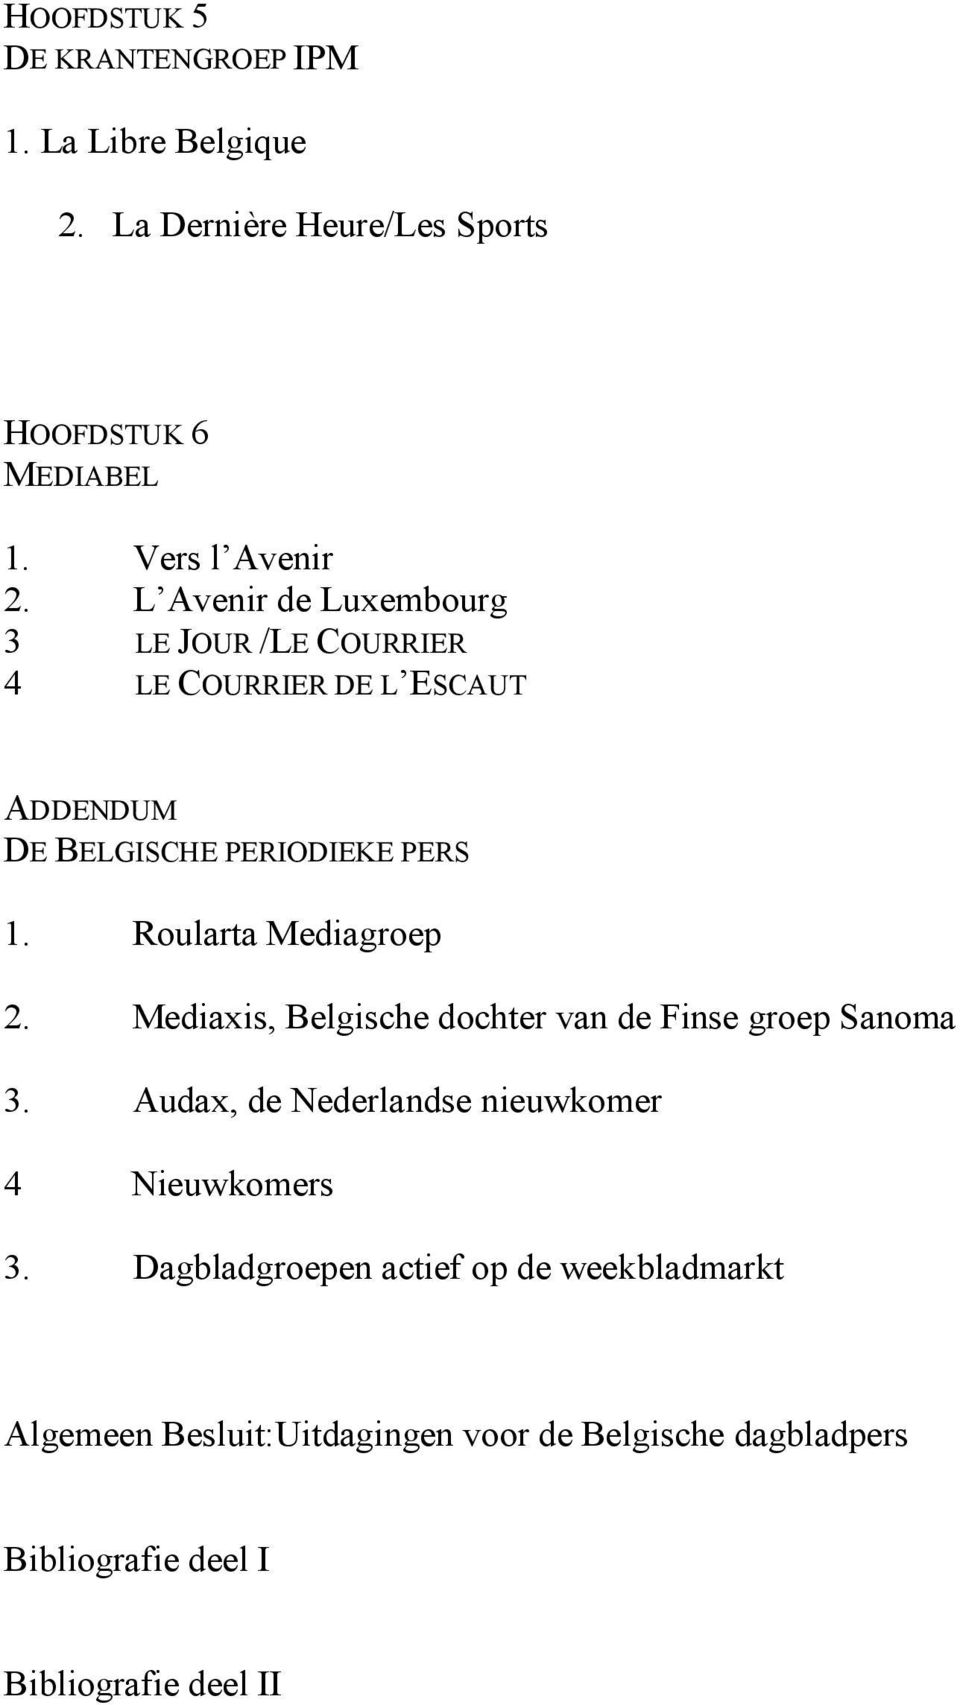 Roularta Mediagroep 2. Mediaxis, Belgische dochter van de Finse groep Sanoma 3.